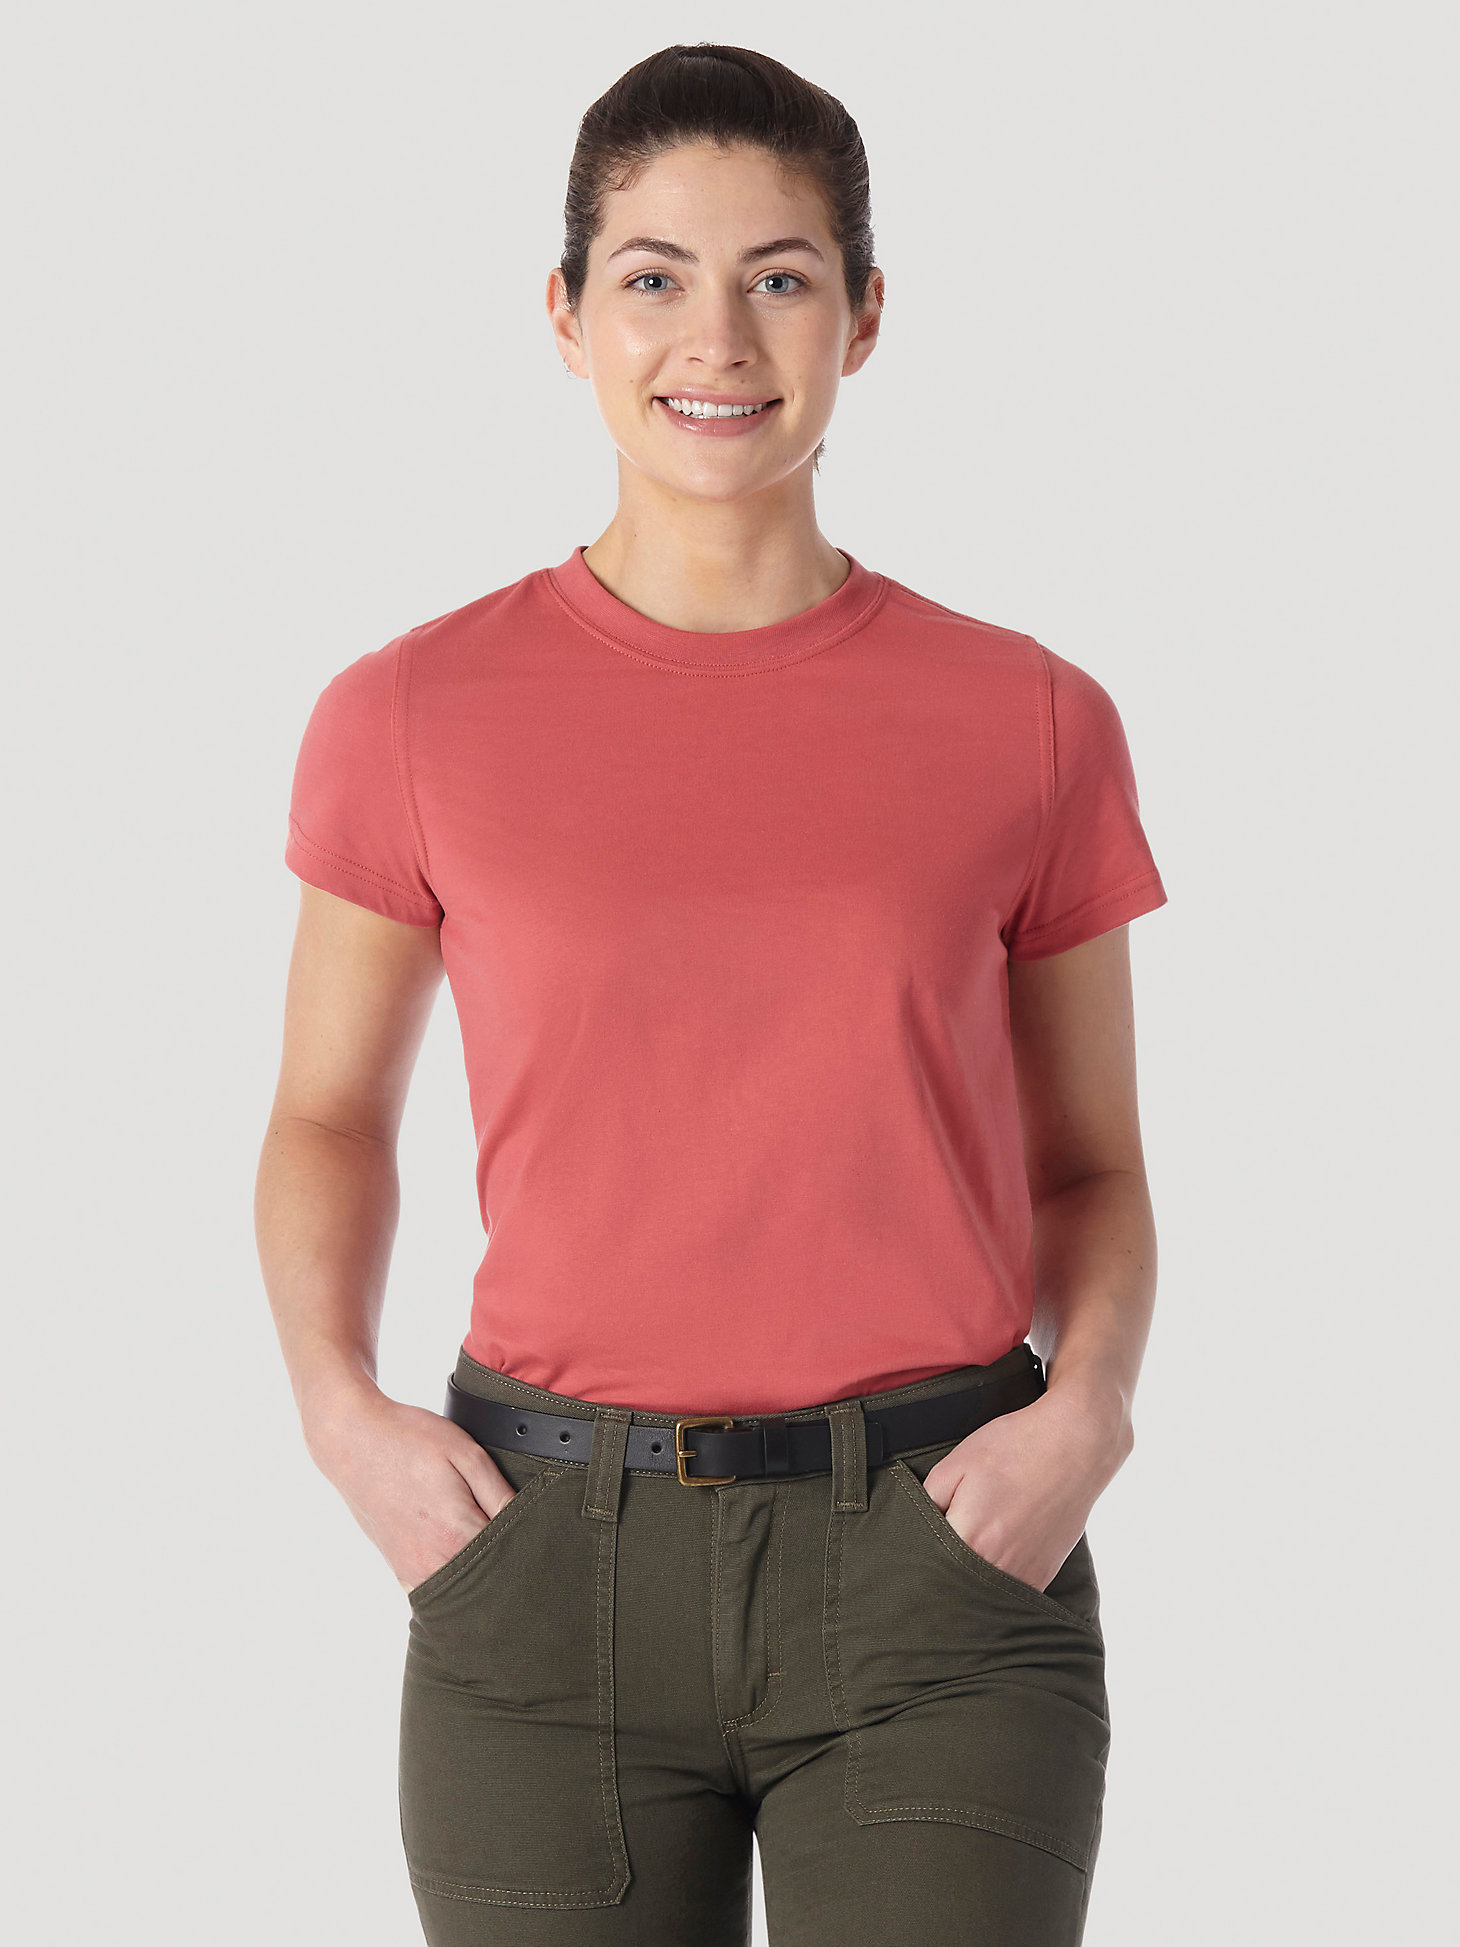 Womens Wrangler T Shirt Crew Neck Short Sleeve New 